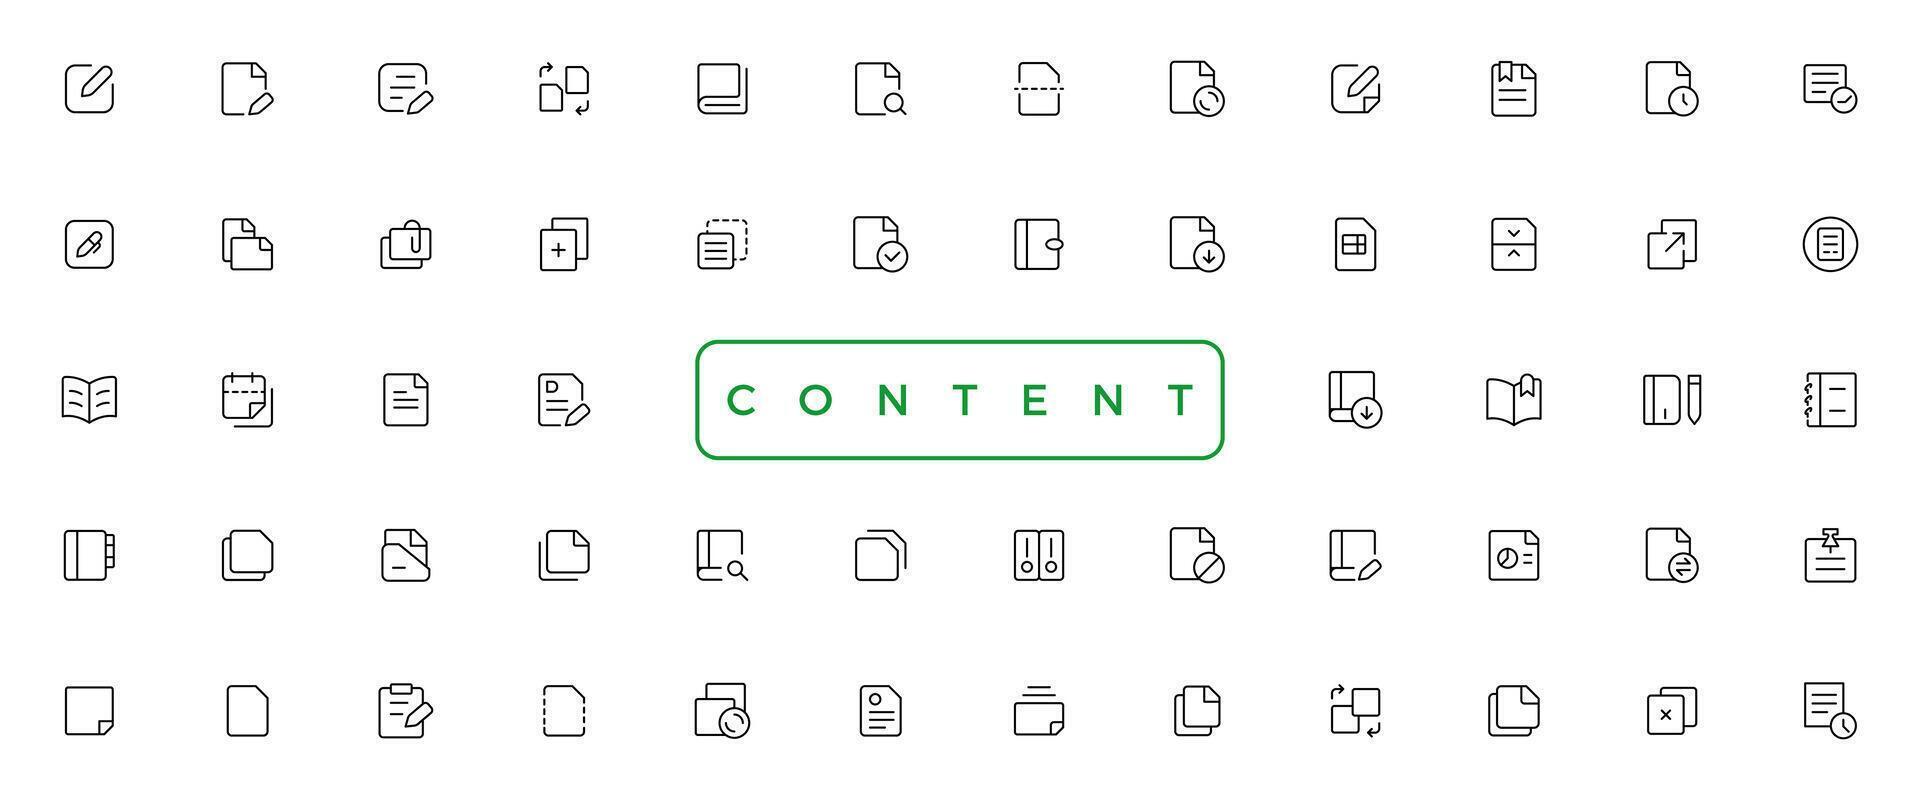 contenido sencillo concepto íconos colocar. contiene tal íconos como vector imagen, medios de comunicación, video, social contenido y más, lata ser usado para web, logo, ui o ux